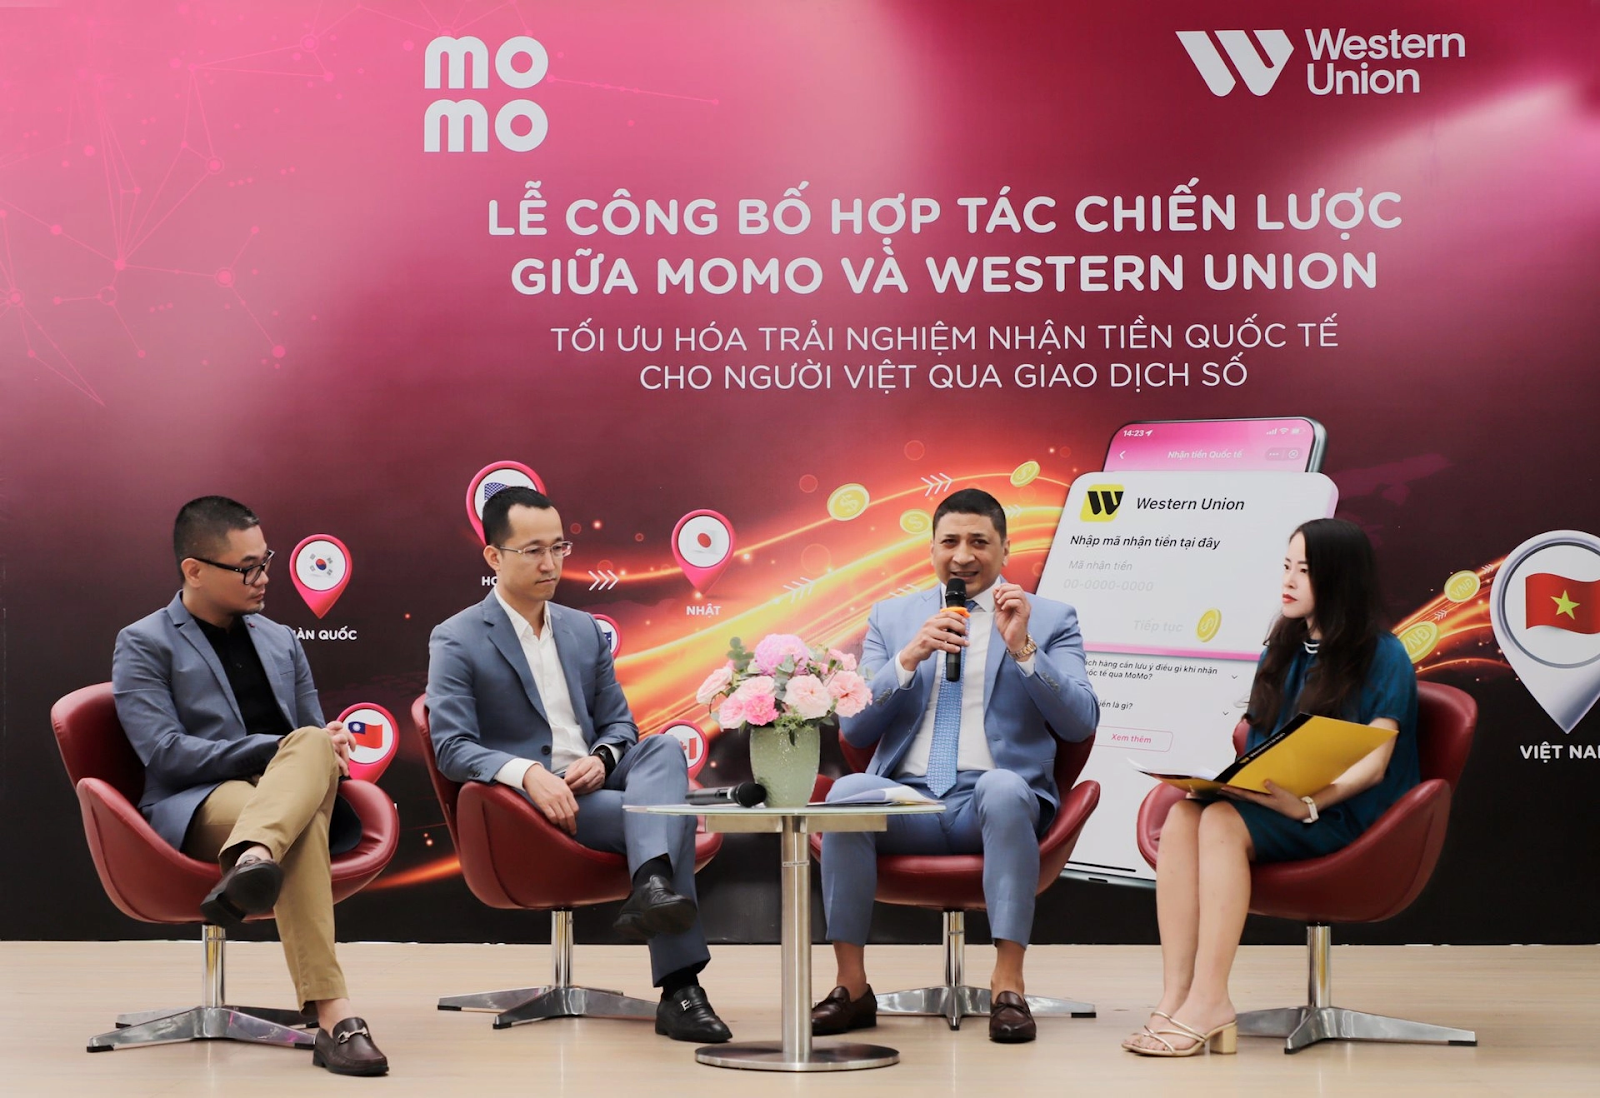 Ví điện tử MoMo: Siêu ứng dụng áp đảo mọi đối thủ, sáng tạo đổi mới trải nghiệm cho người tiêu dùng Việt - Ảnh 4.